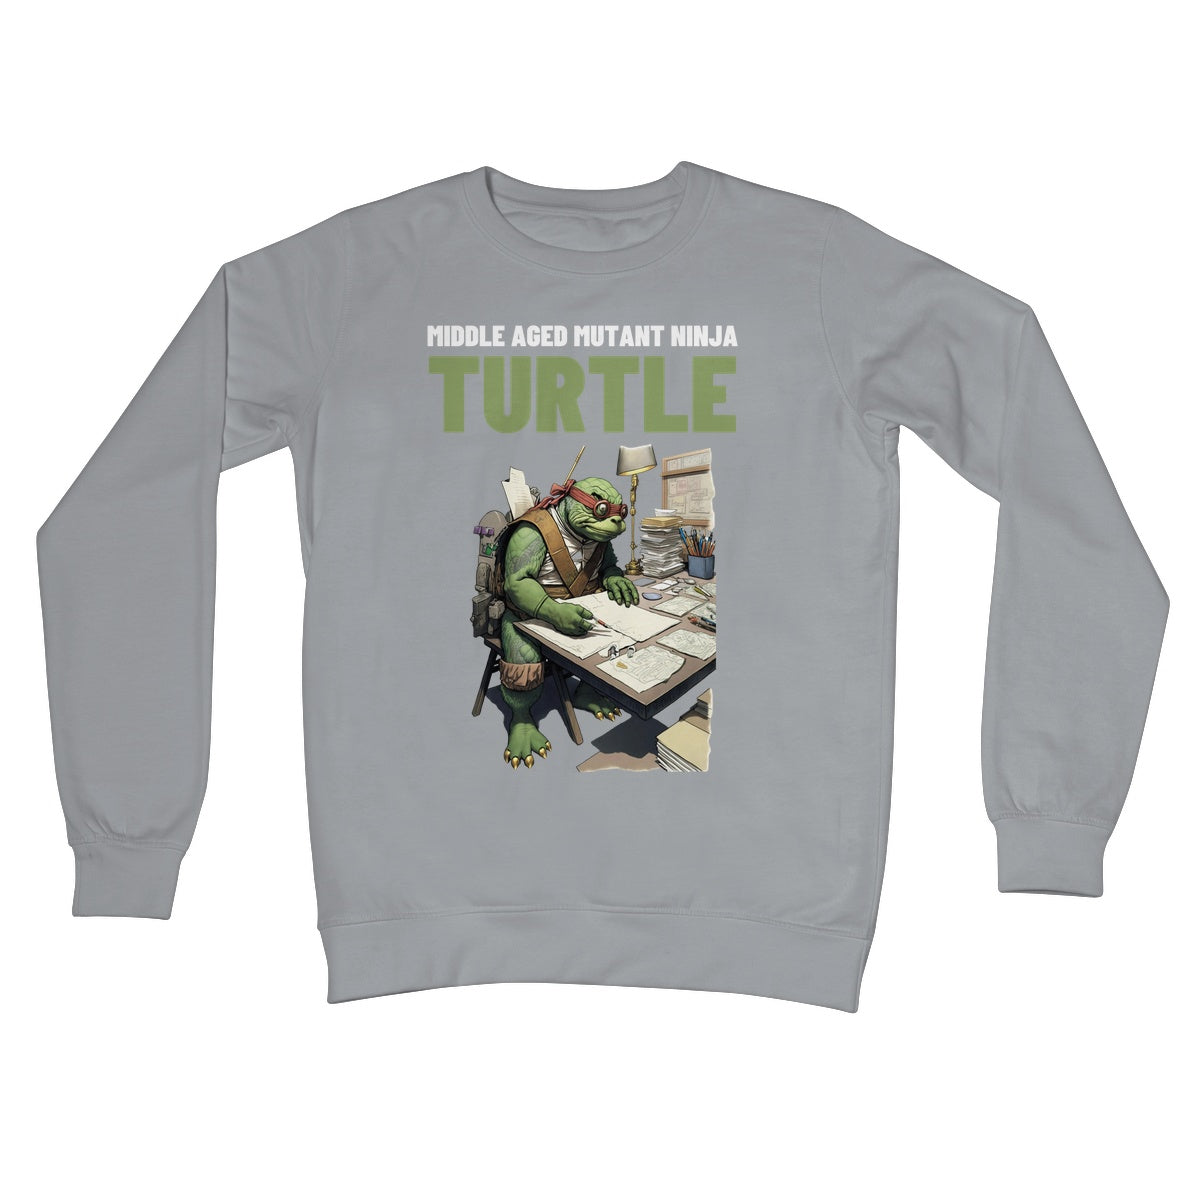 middle aged mutant ninja turtle jumper steel grey